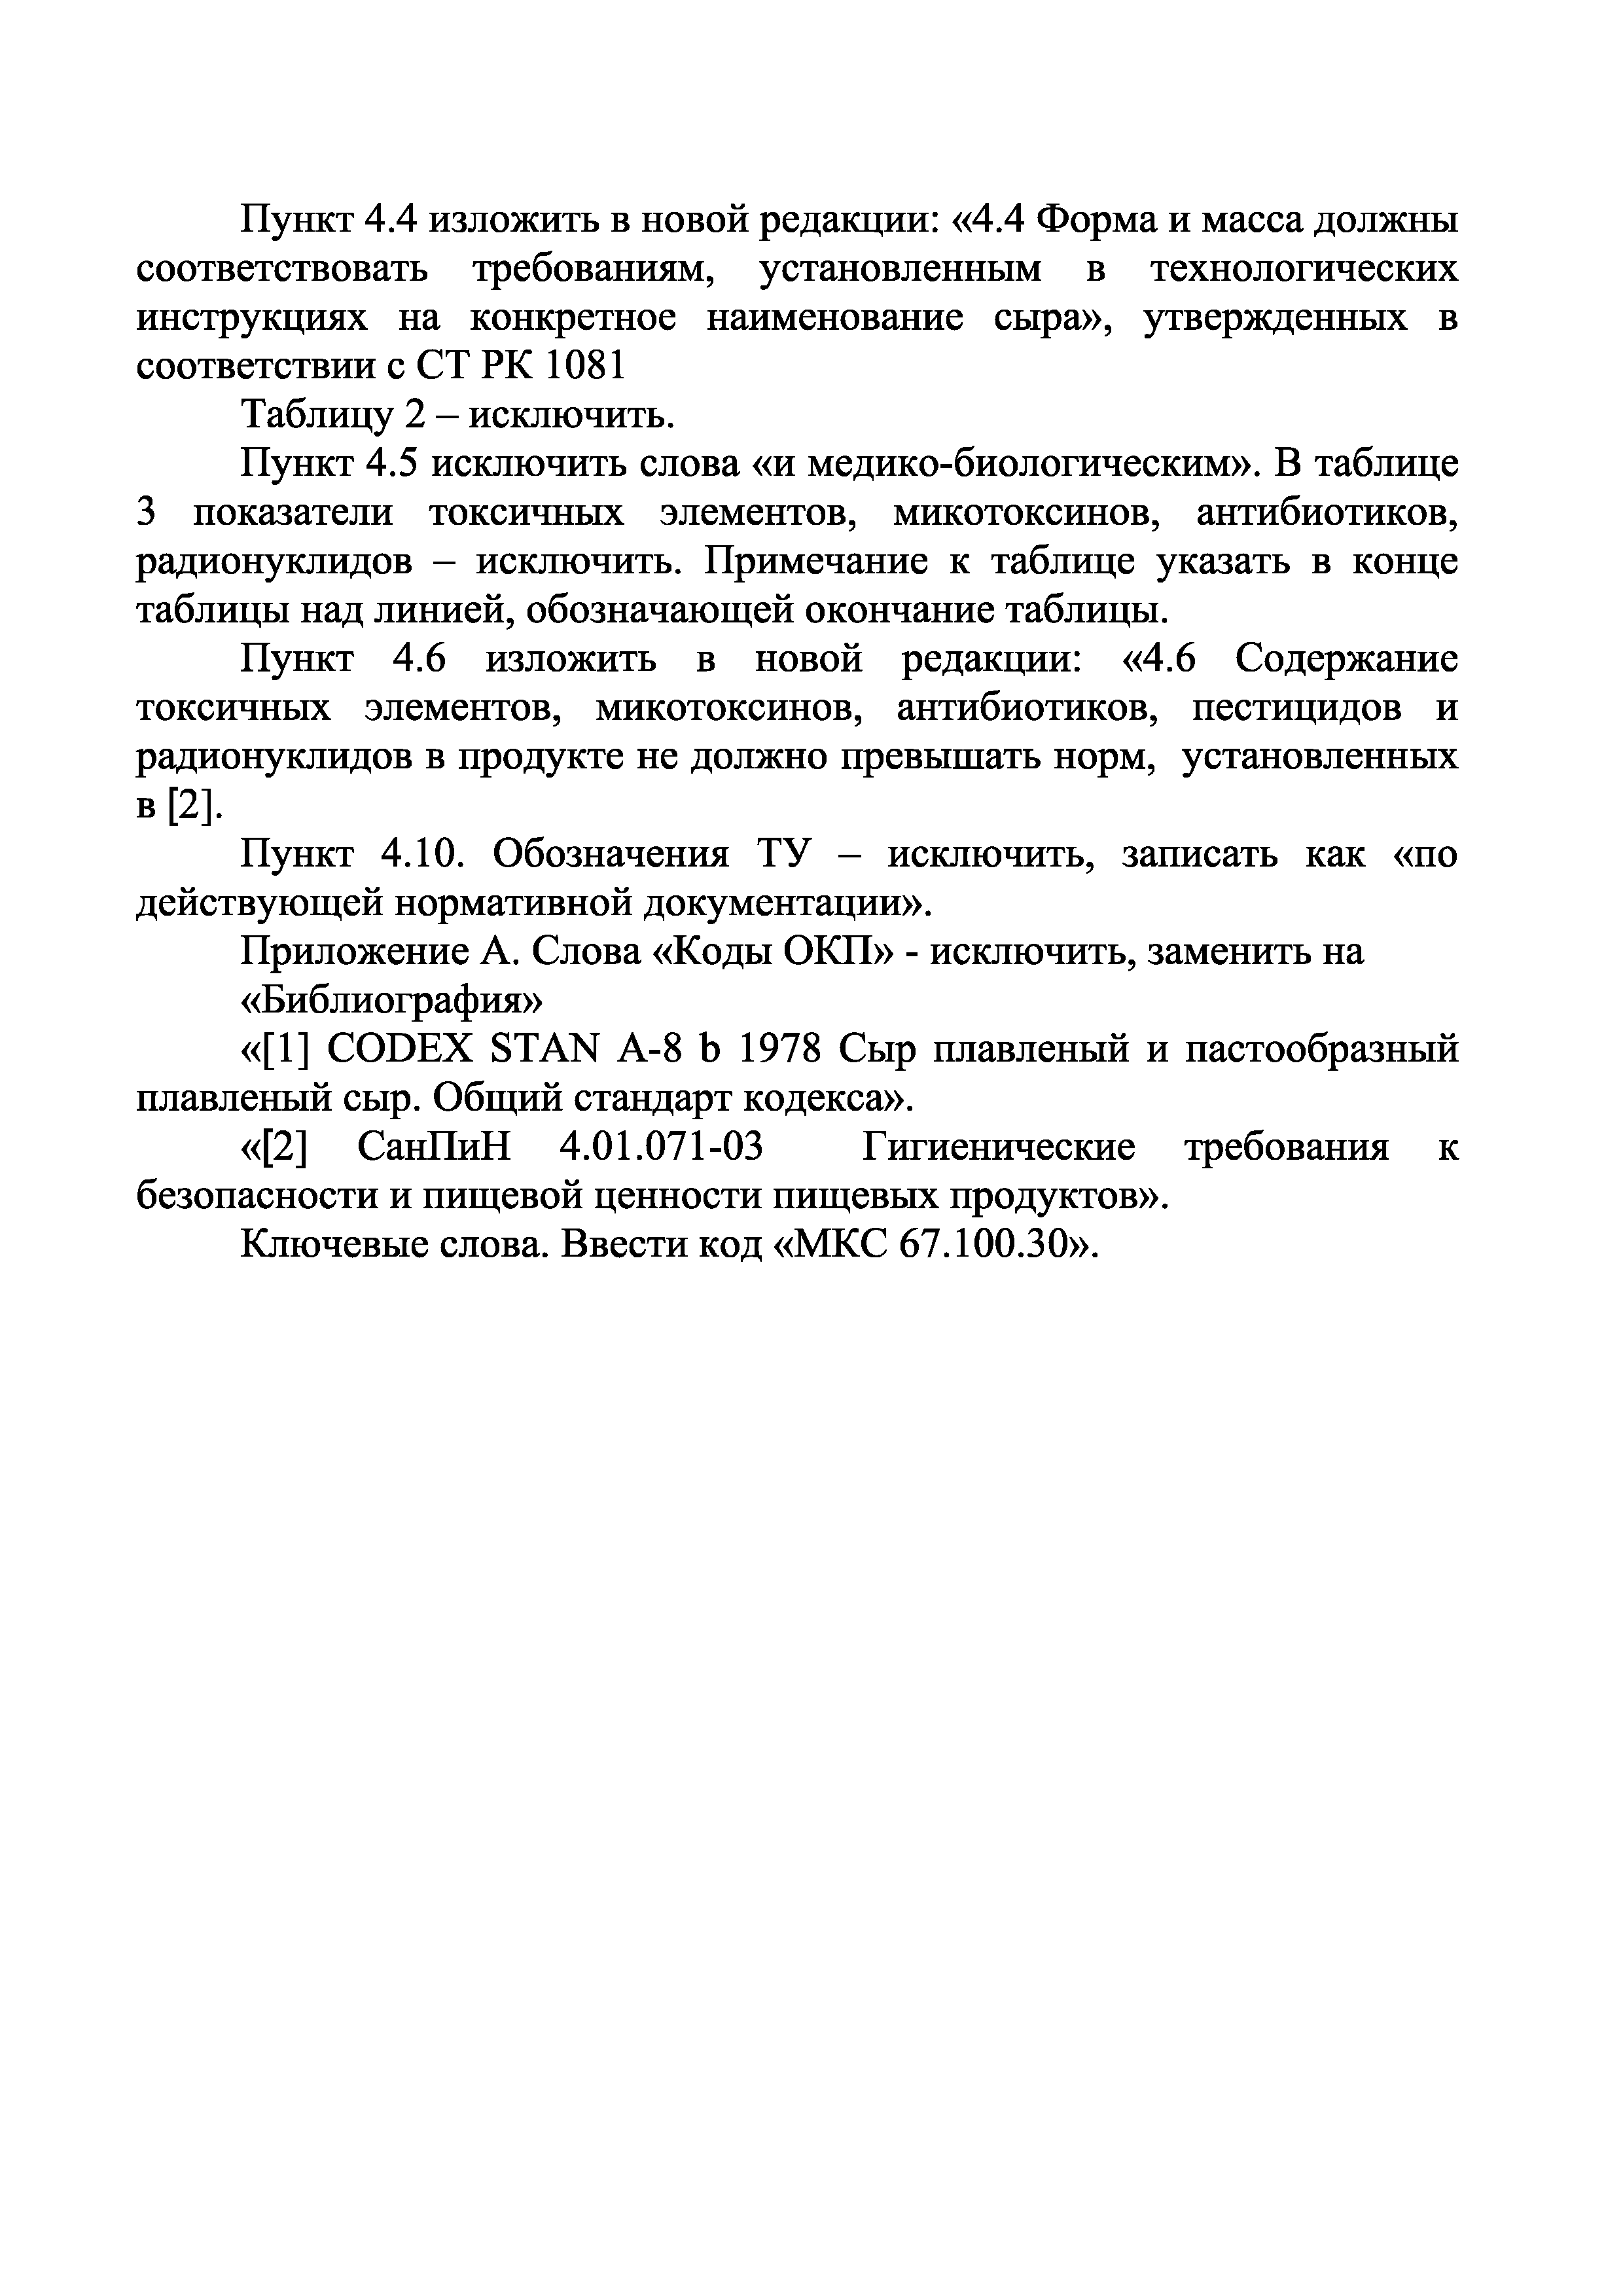 СТ РК 976-94